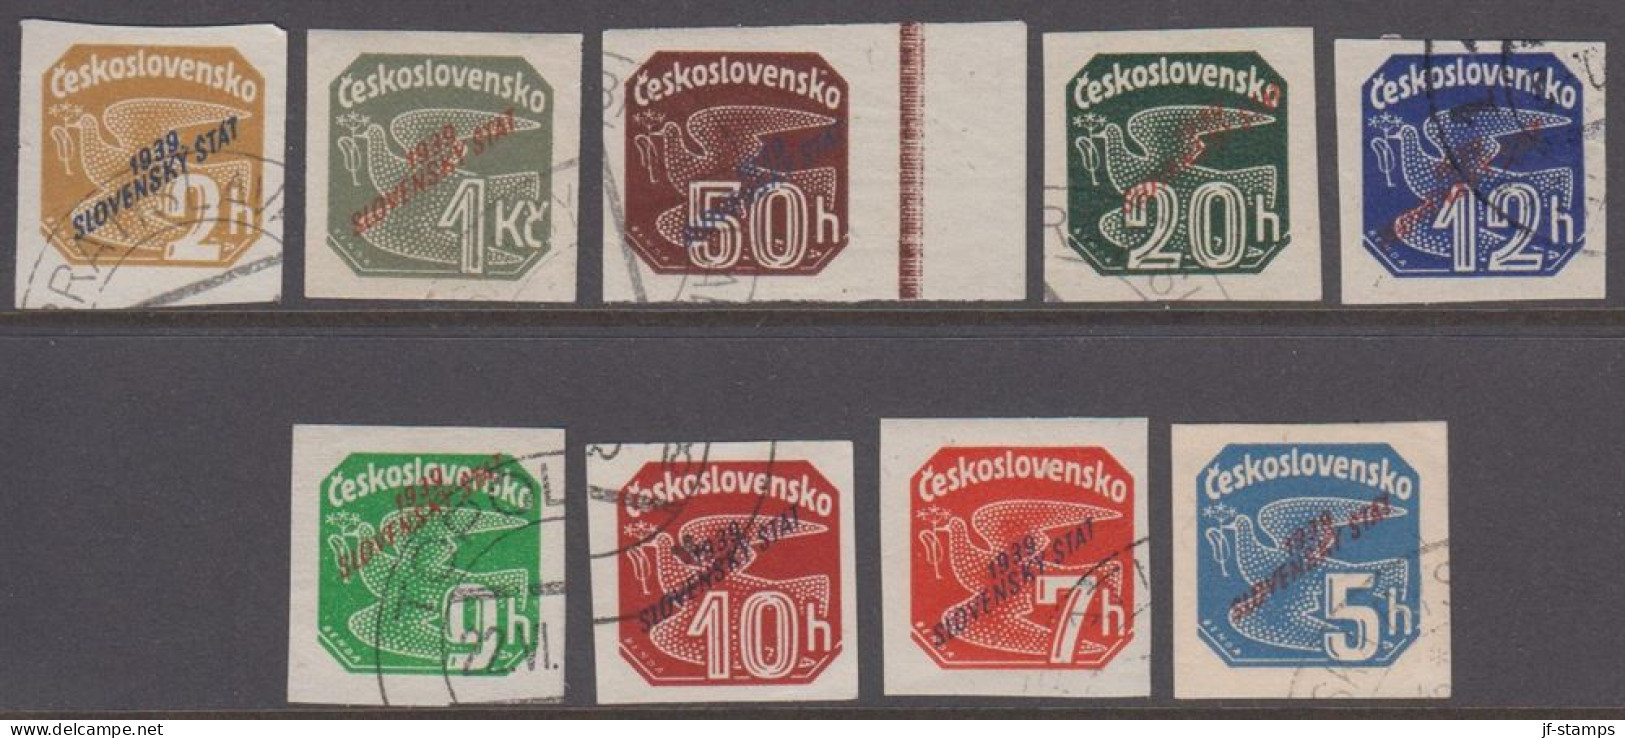 1939. SLOVENSKO 1939 / Slovenský štát On Newspaper Stamps. Complete Set Of 9 Stamps.  (Michel 26-34) - JF418434 - Used Stamps